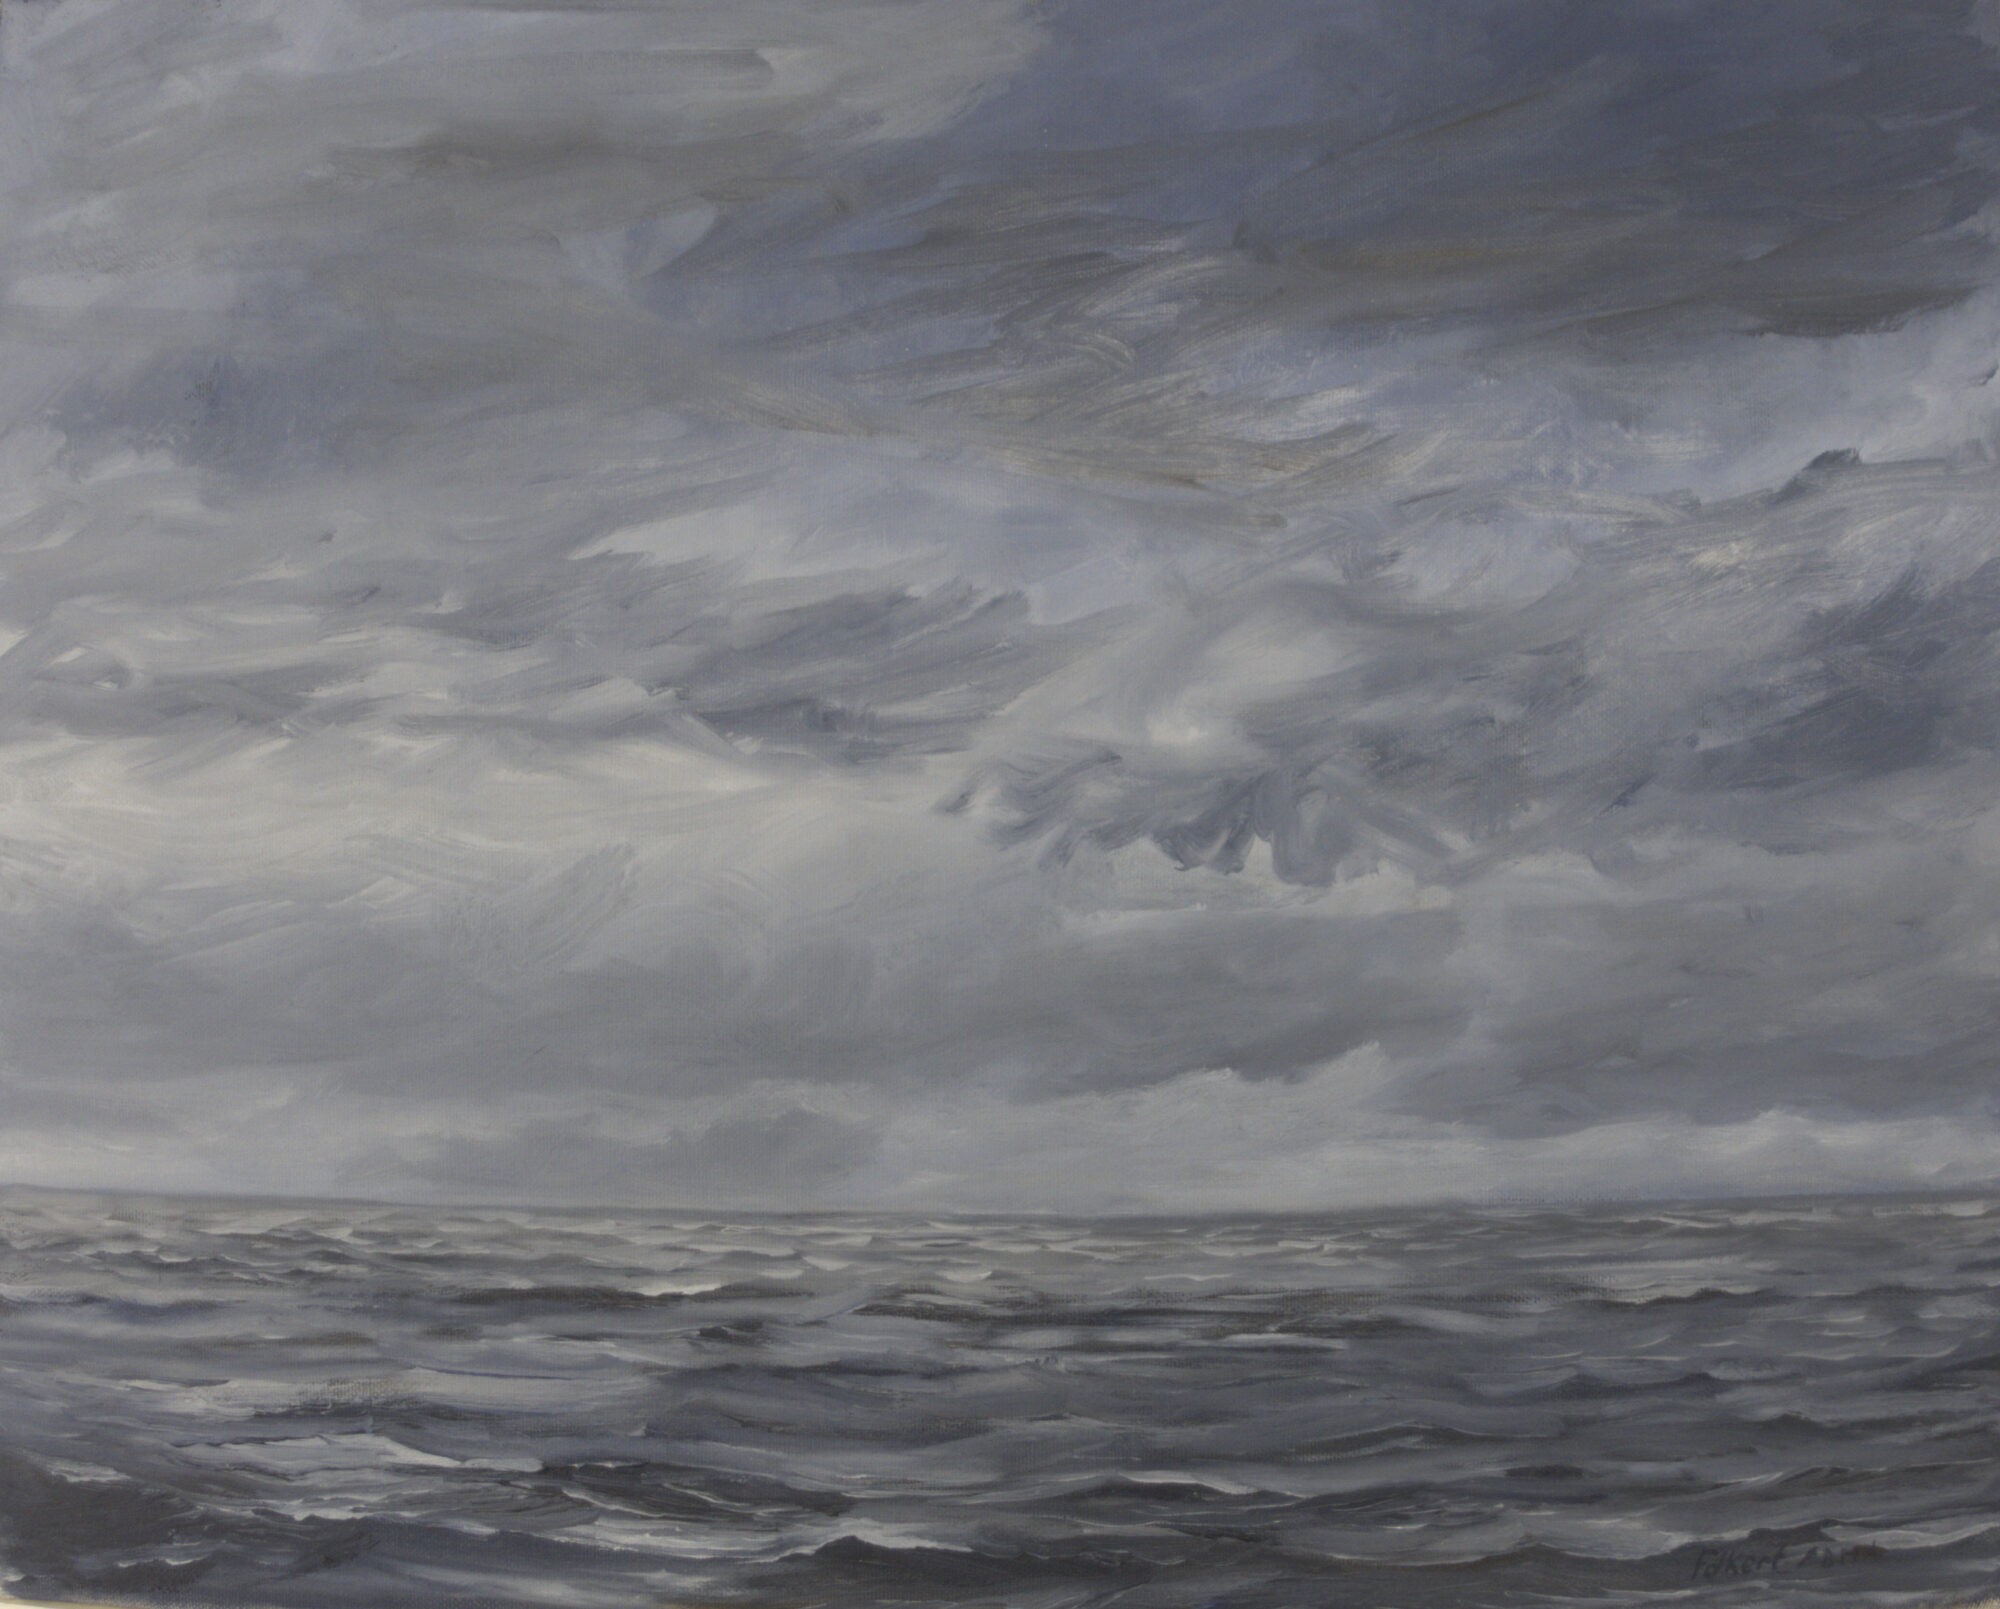 Zee met kleine golfjes en onrustige wolkenlucht geschilderd met olieverf